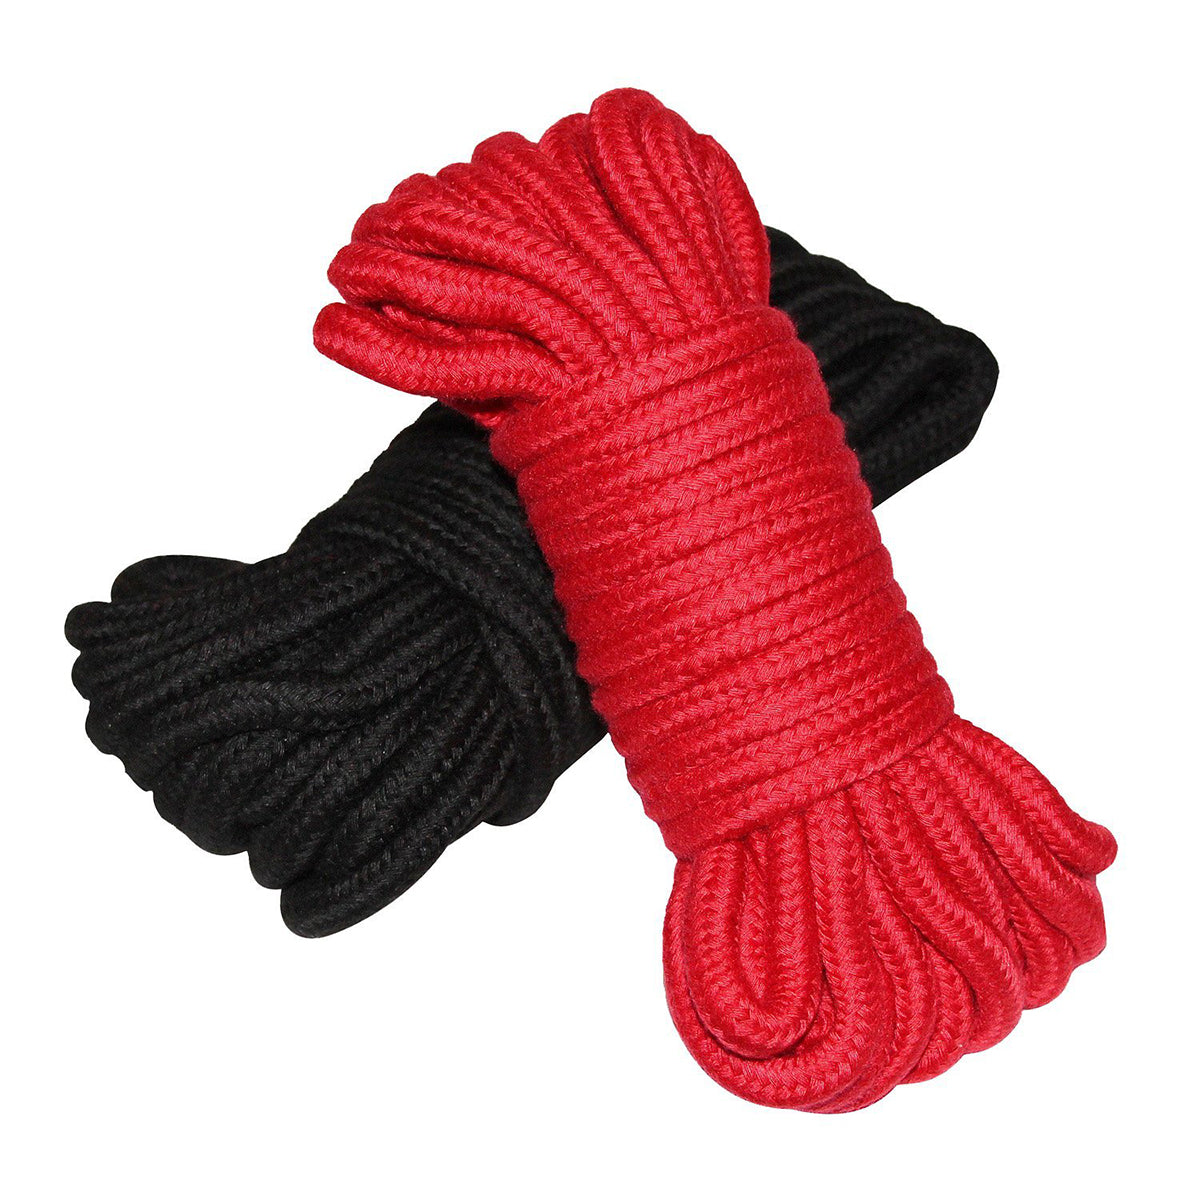 Shibari Soft Bondage Rope 2pk - Black & Red Intimates Adult Boutique